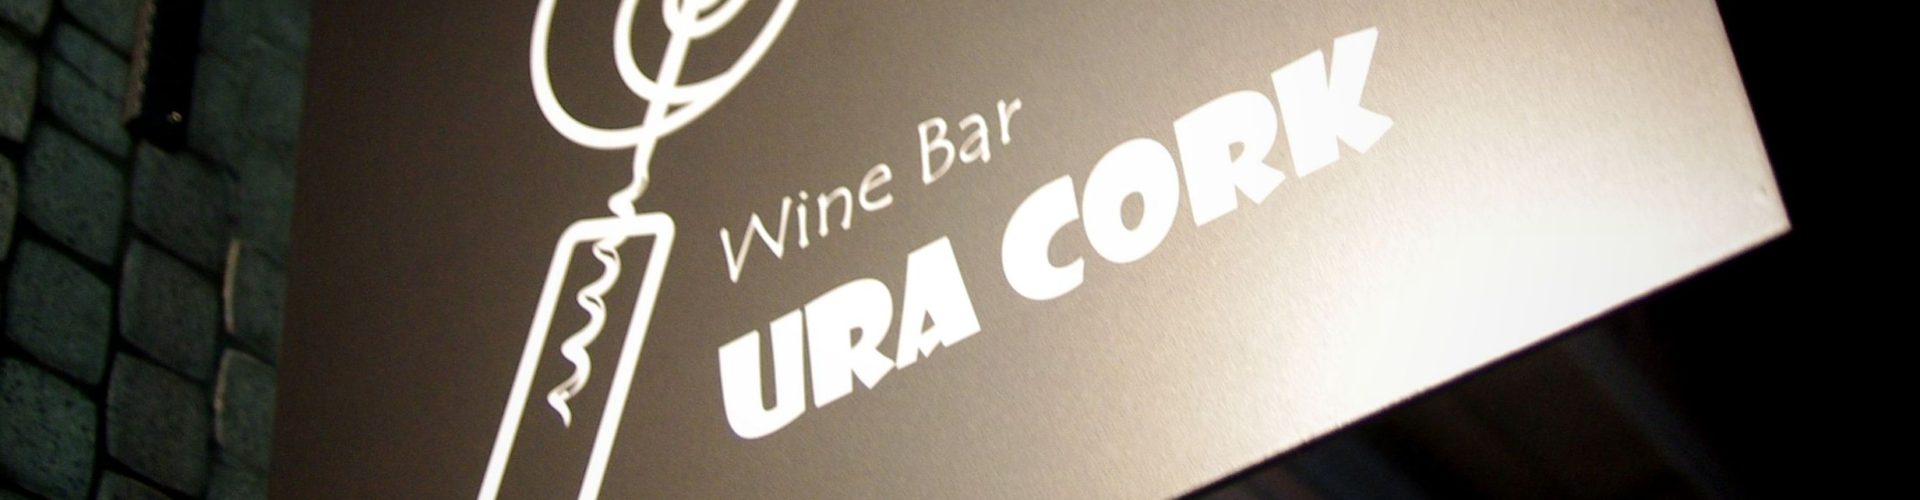 土曜日のWine Bar URACORK、深夜まで営業♪